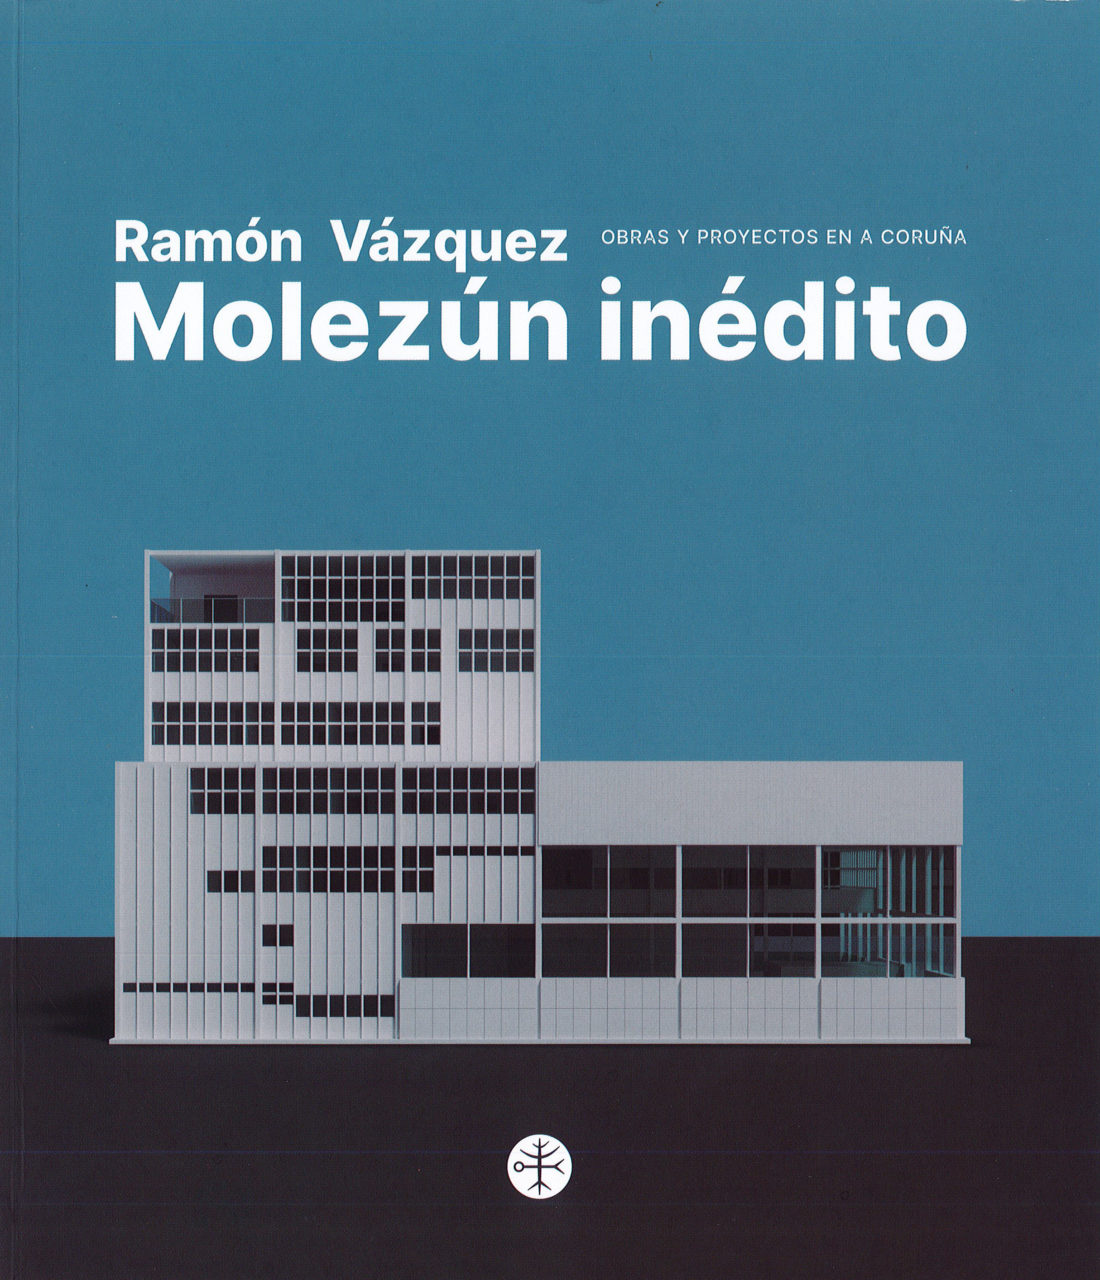 Imagen de portada del libro Ramón Vázquez Molezún inédito